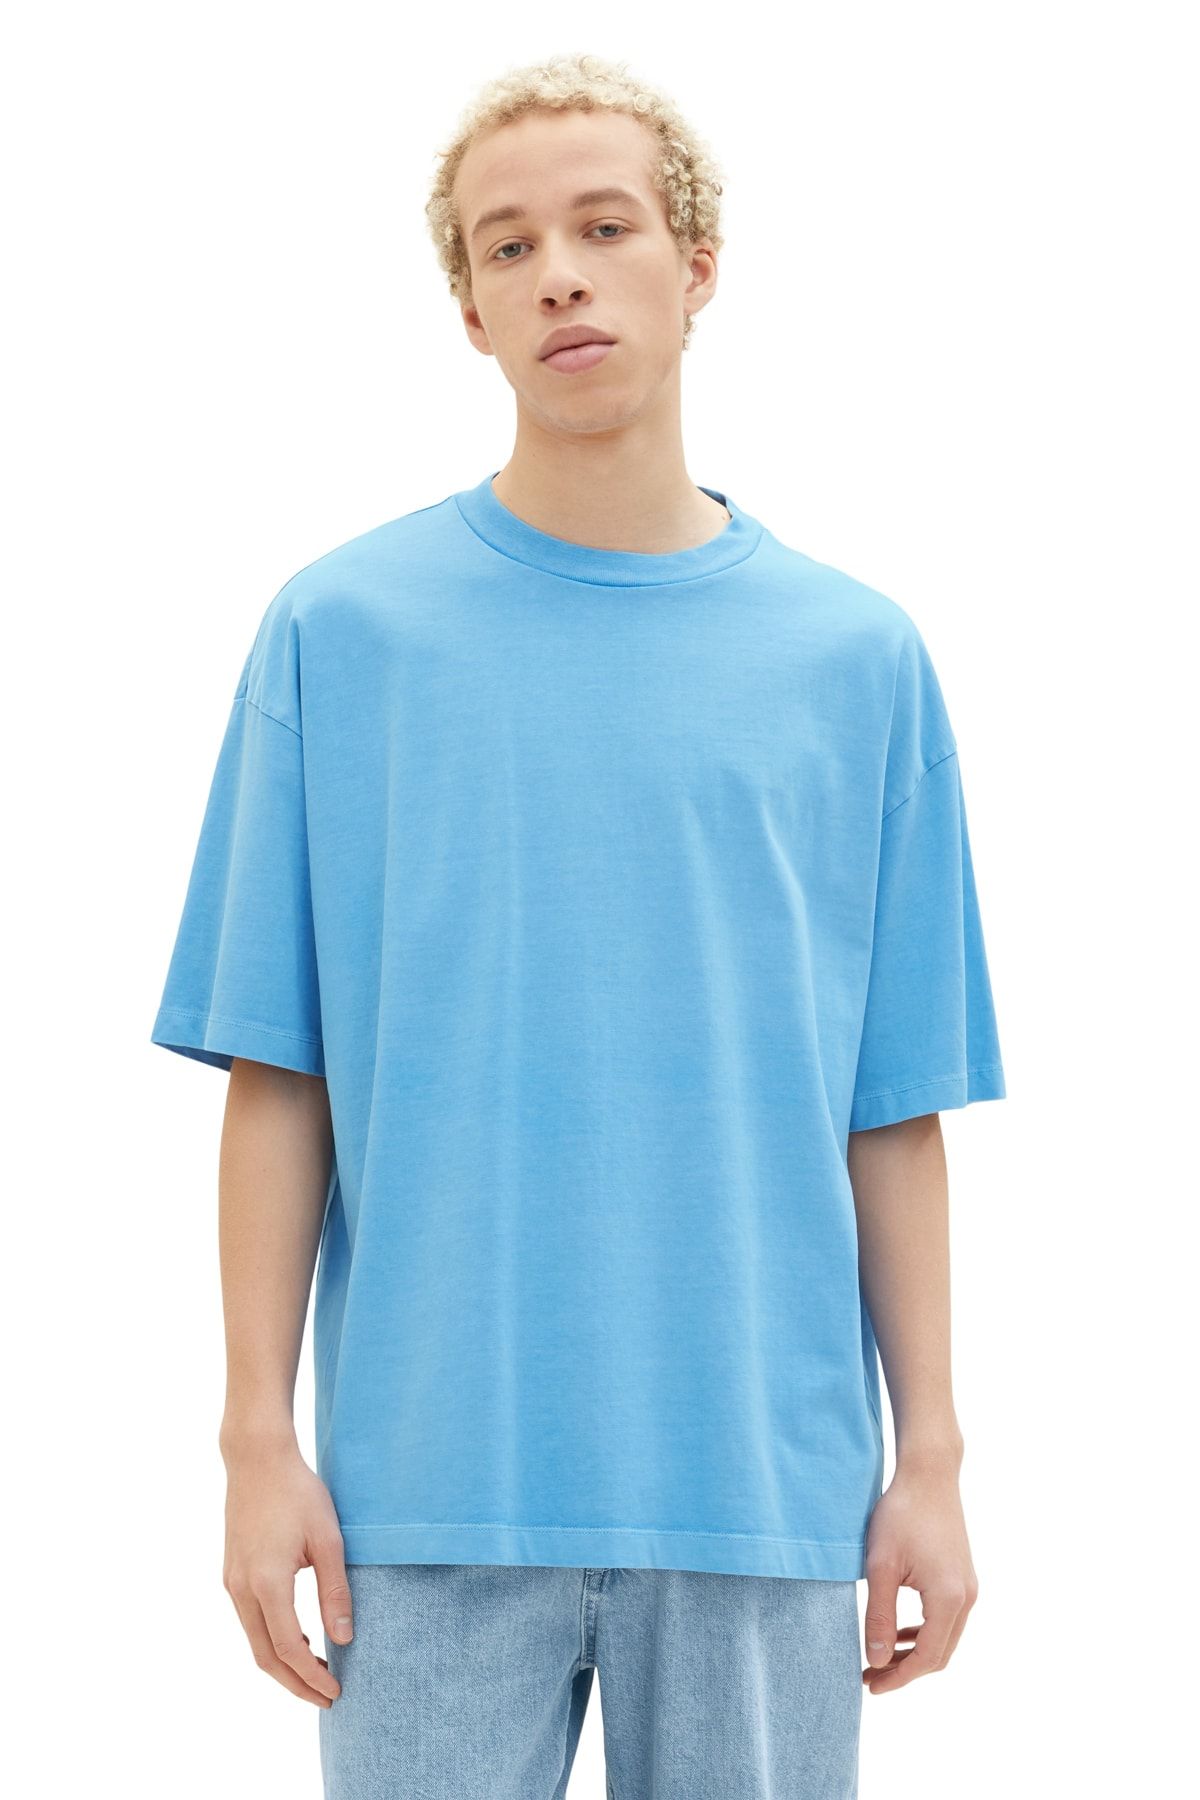 Tom Tailor Denim Men\'s rainy sky blue T-Shirt - Trendyol